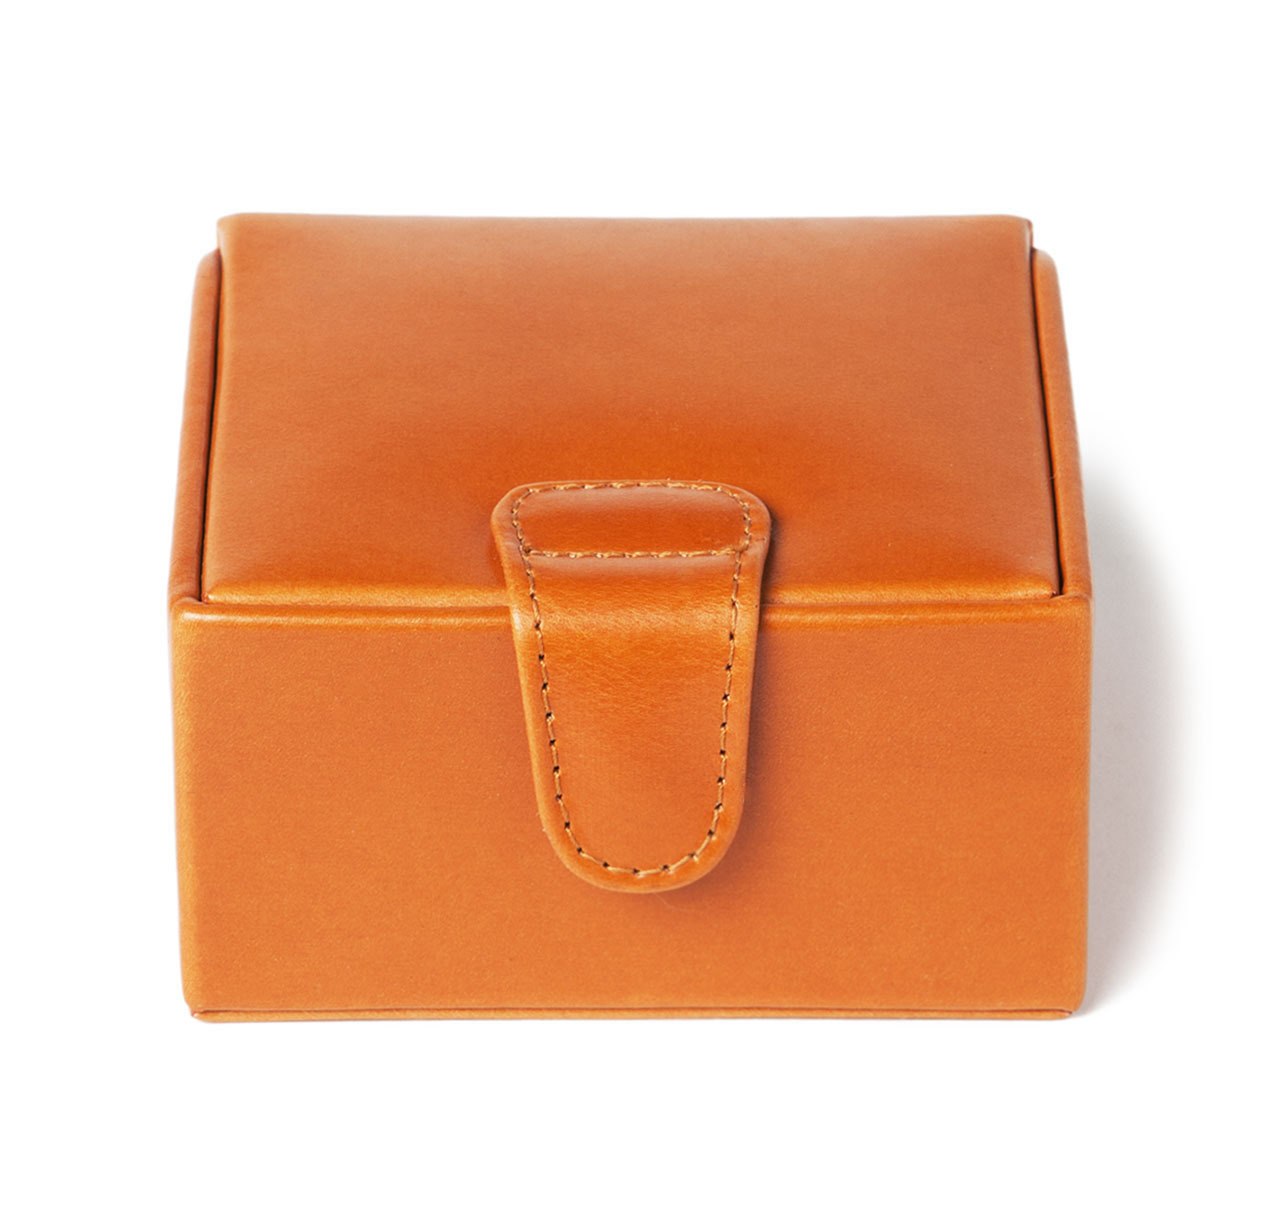 Sir Jack's London Tan Leather Medium Stud Box